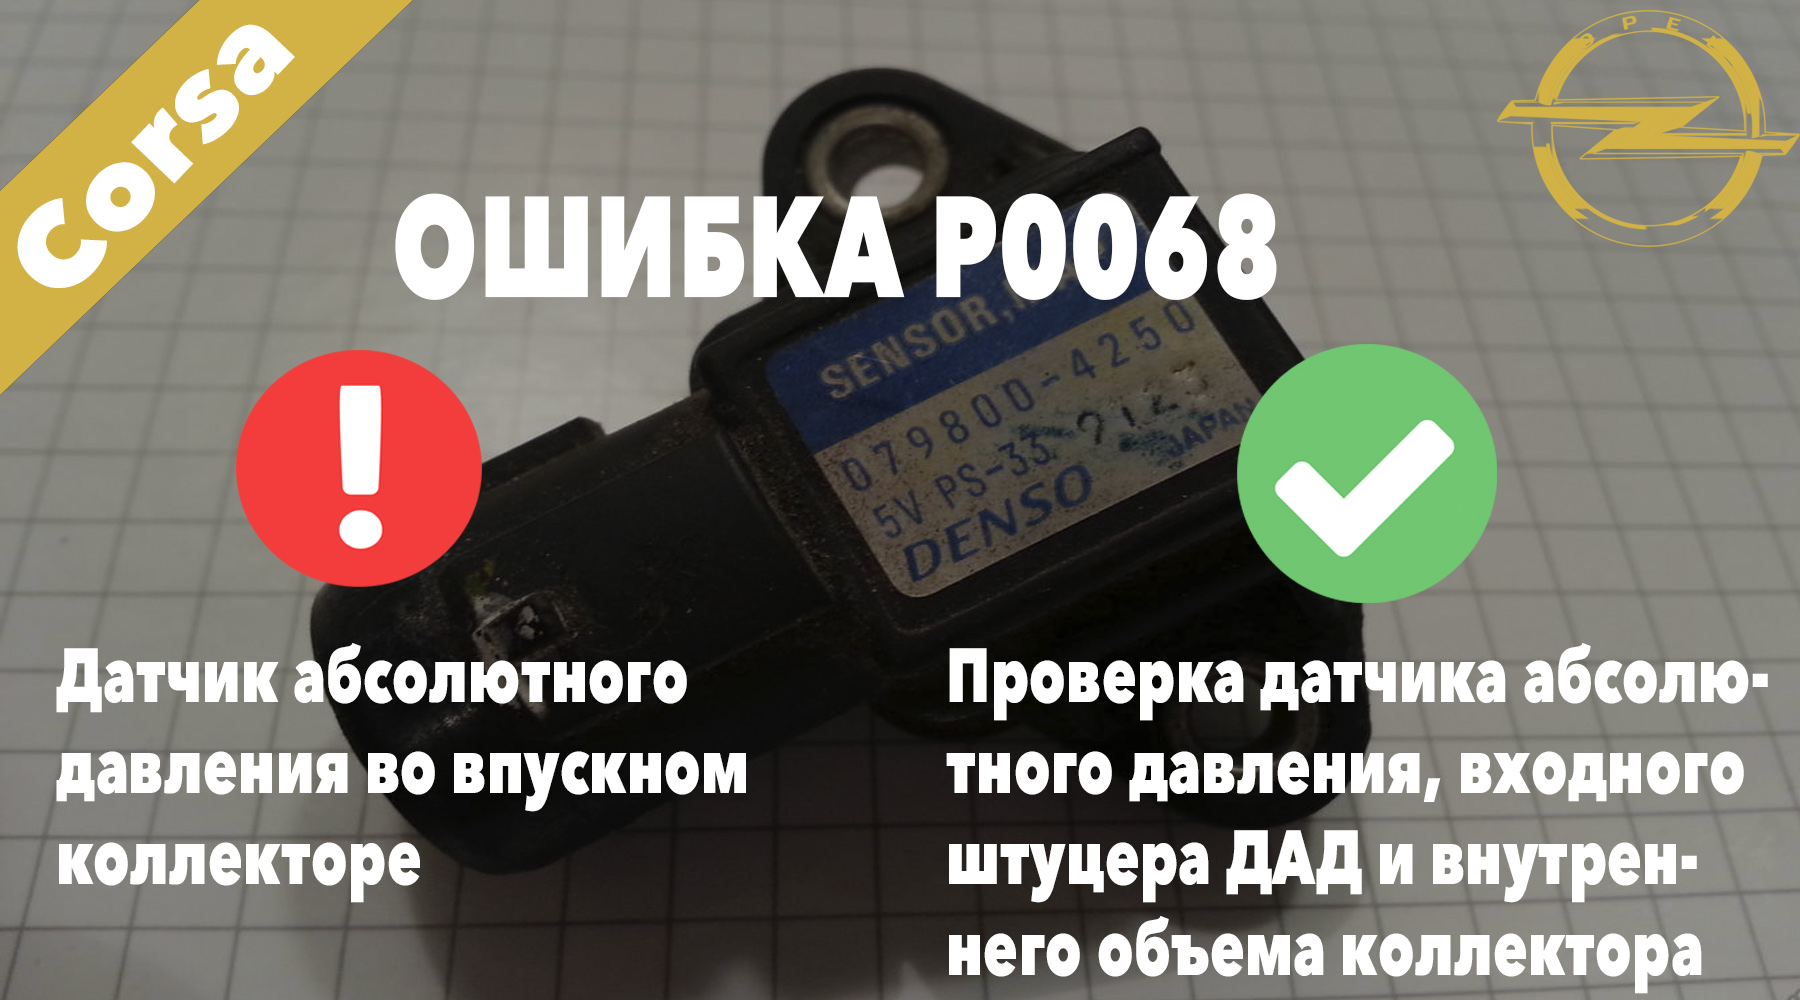 Опель Корса код ошибки P0068 – датчик абсолютного давления во впускном коллекторе